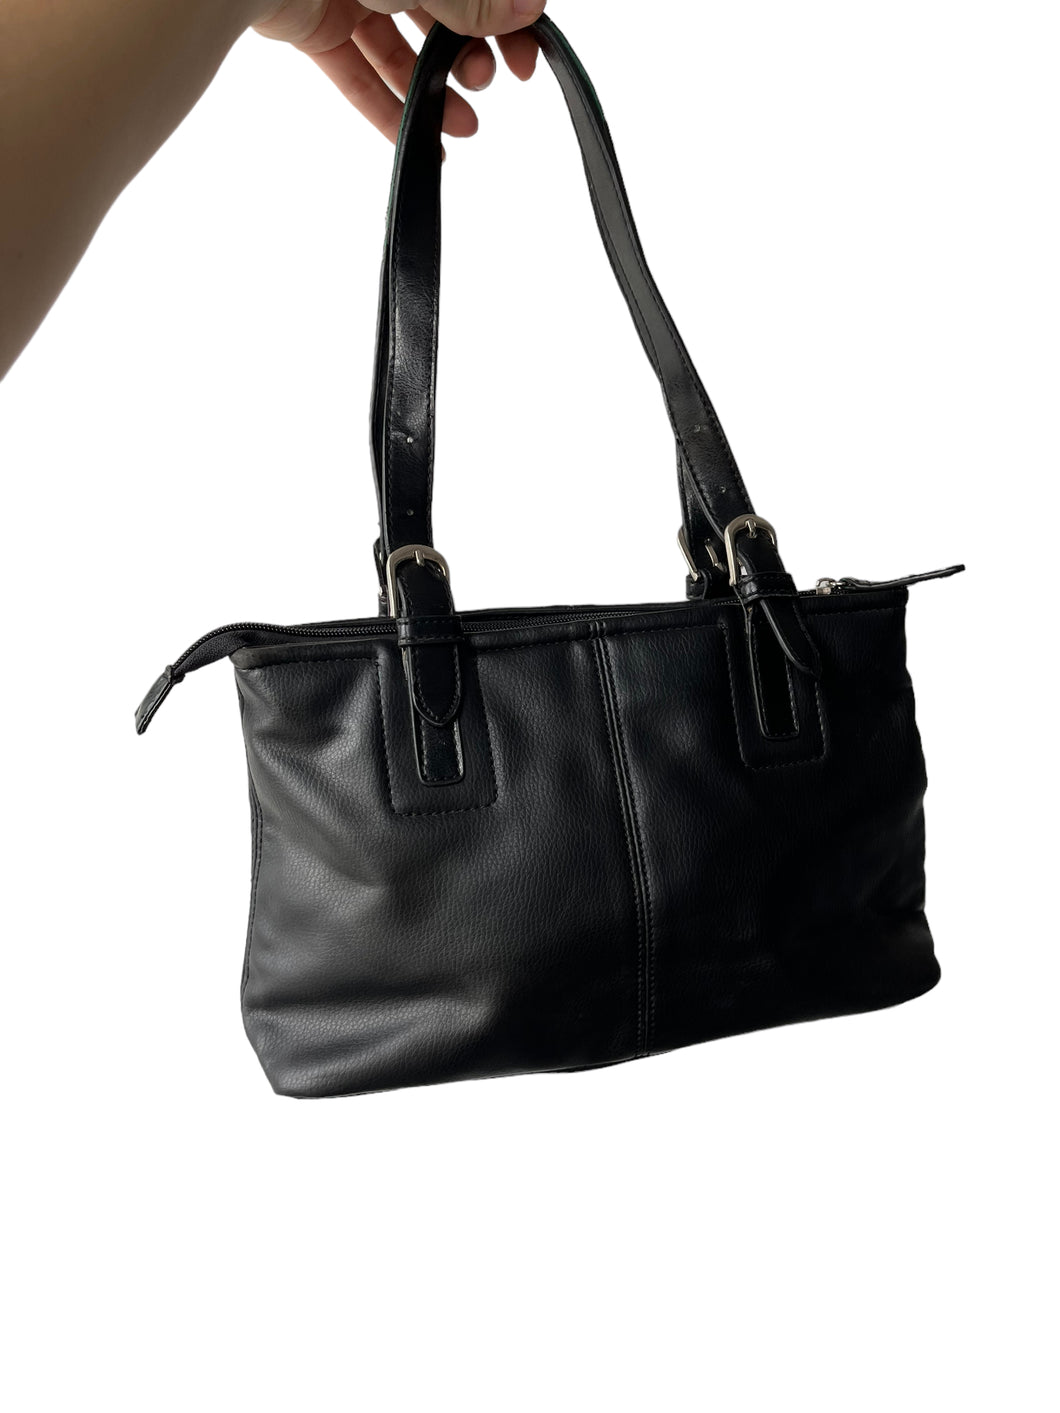 Black basic leather shoulder bag with silver details